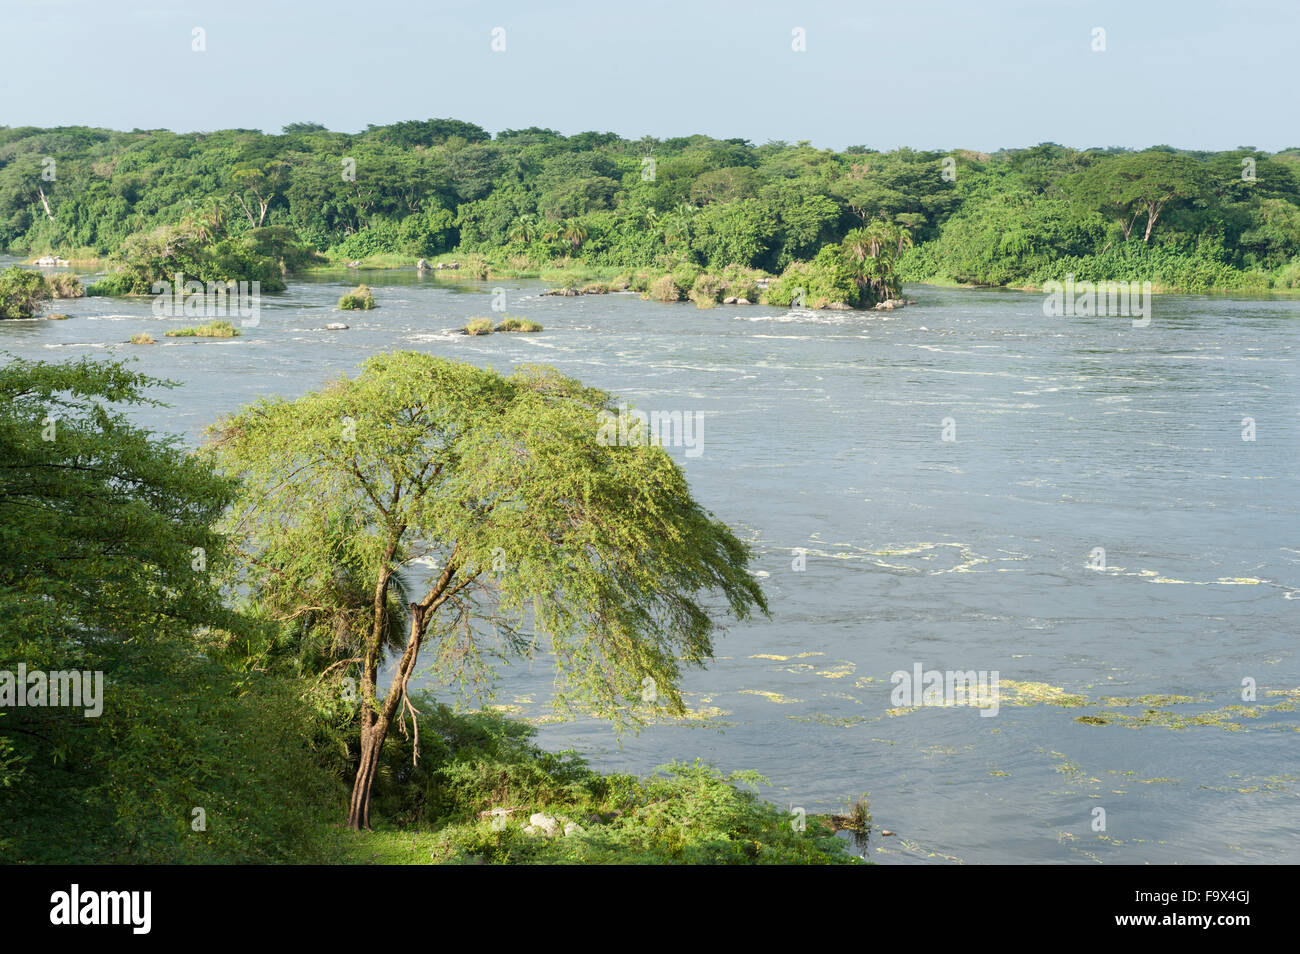 Le Nil Victoria, Murchison Falls National Park, de l'Ouganda Banque D'Images